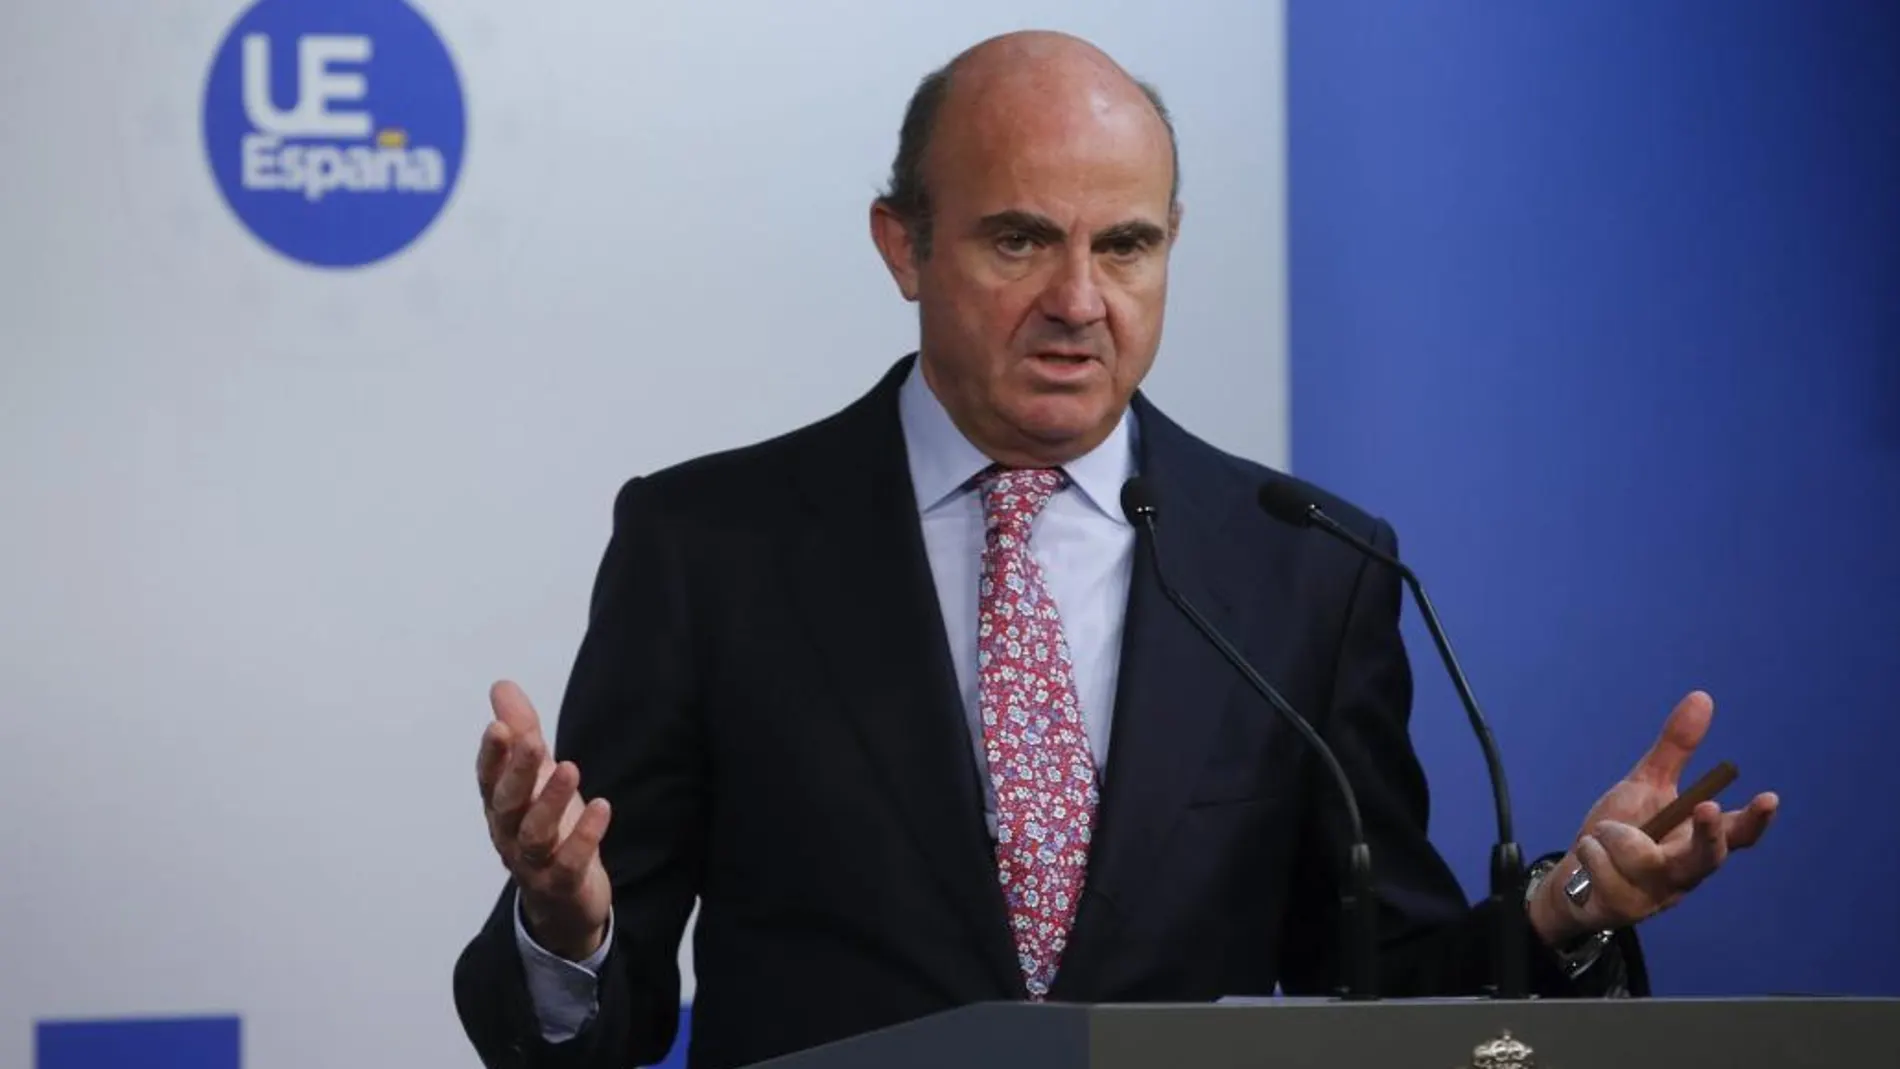 El ministro español de Economía y Competitividad, Luis de Guindos